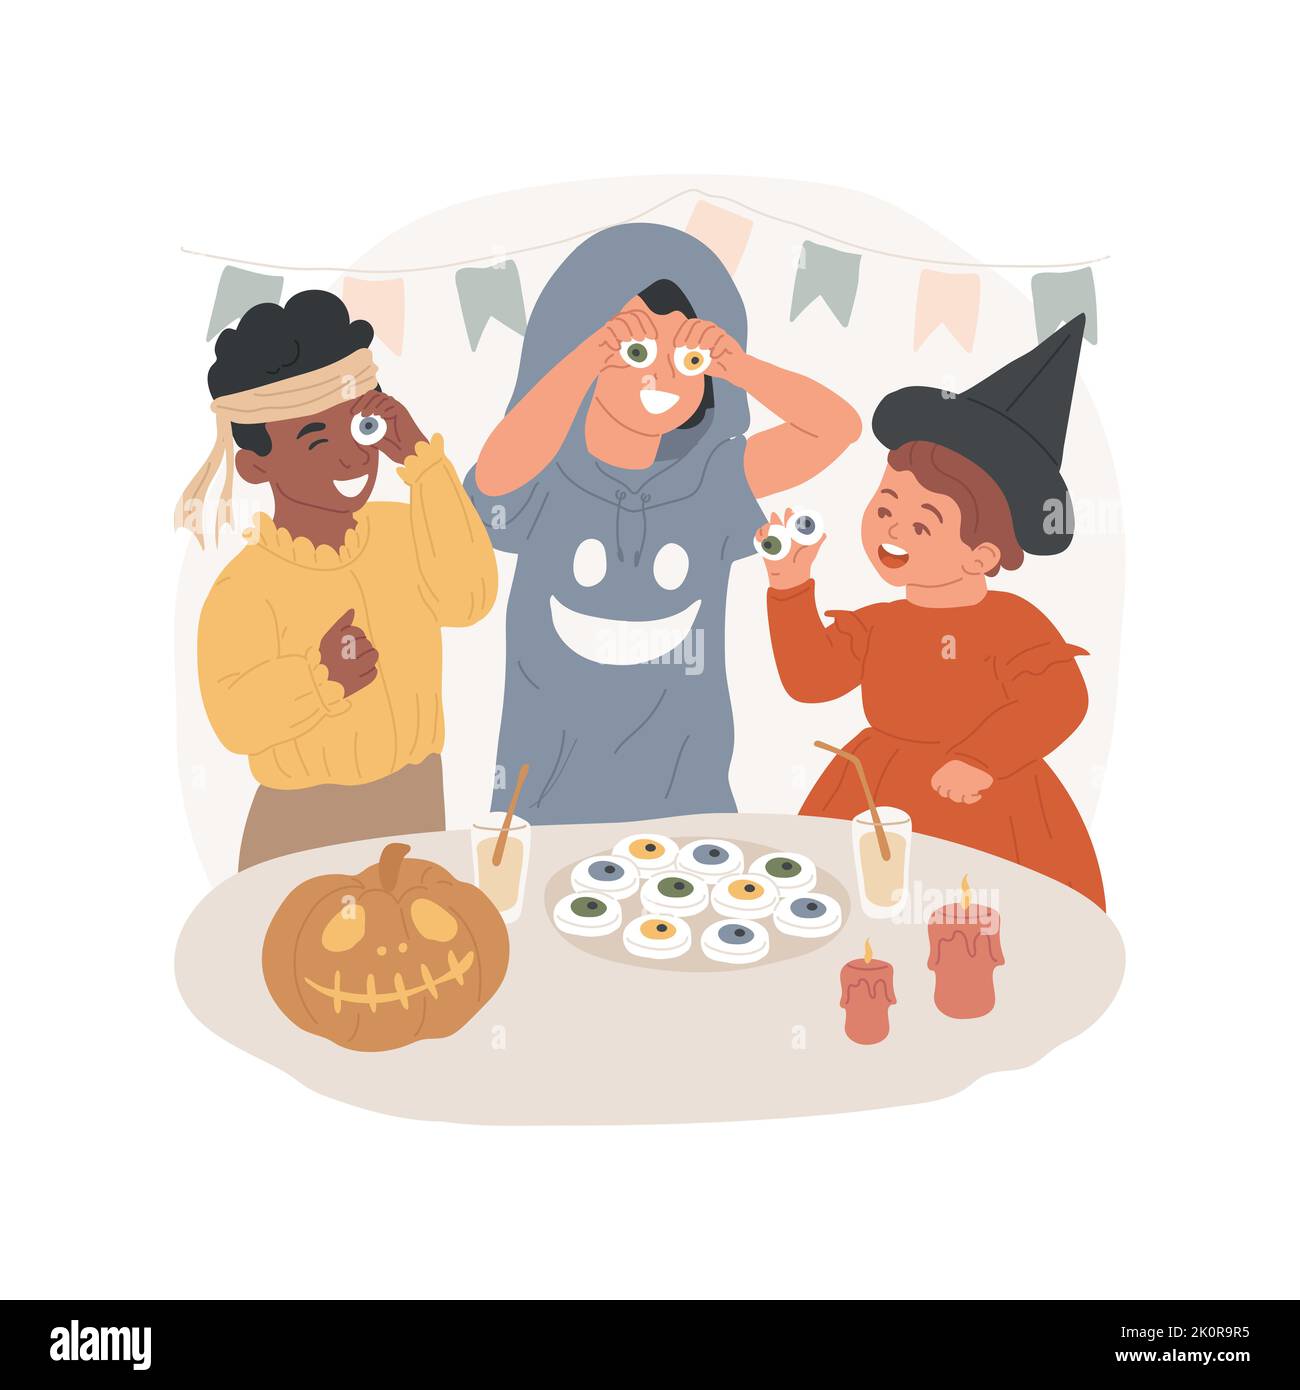 Lebensmittel Witze isoliert Cartoon Vektor Illustration. Glückliche Kinder spielen Tricks während der Party mit Süßigkeiten, Halloween Essen Witze, Spaß zusammen, Feiertag Feier Vektor Cartoon. Stock Vektor